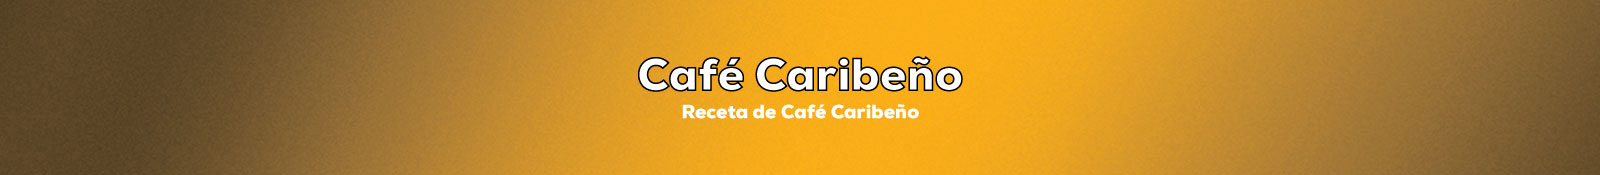 Preparar Café Caribeño